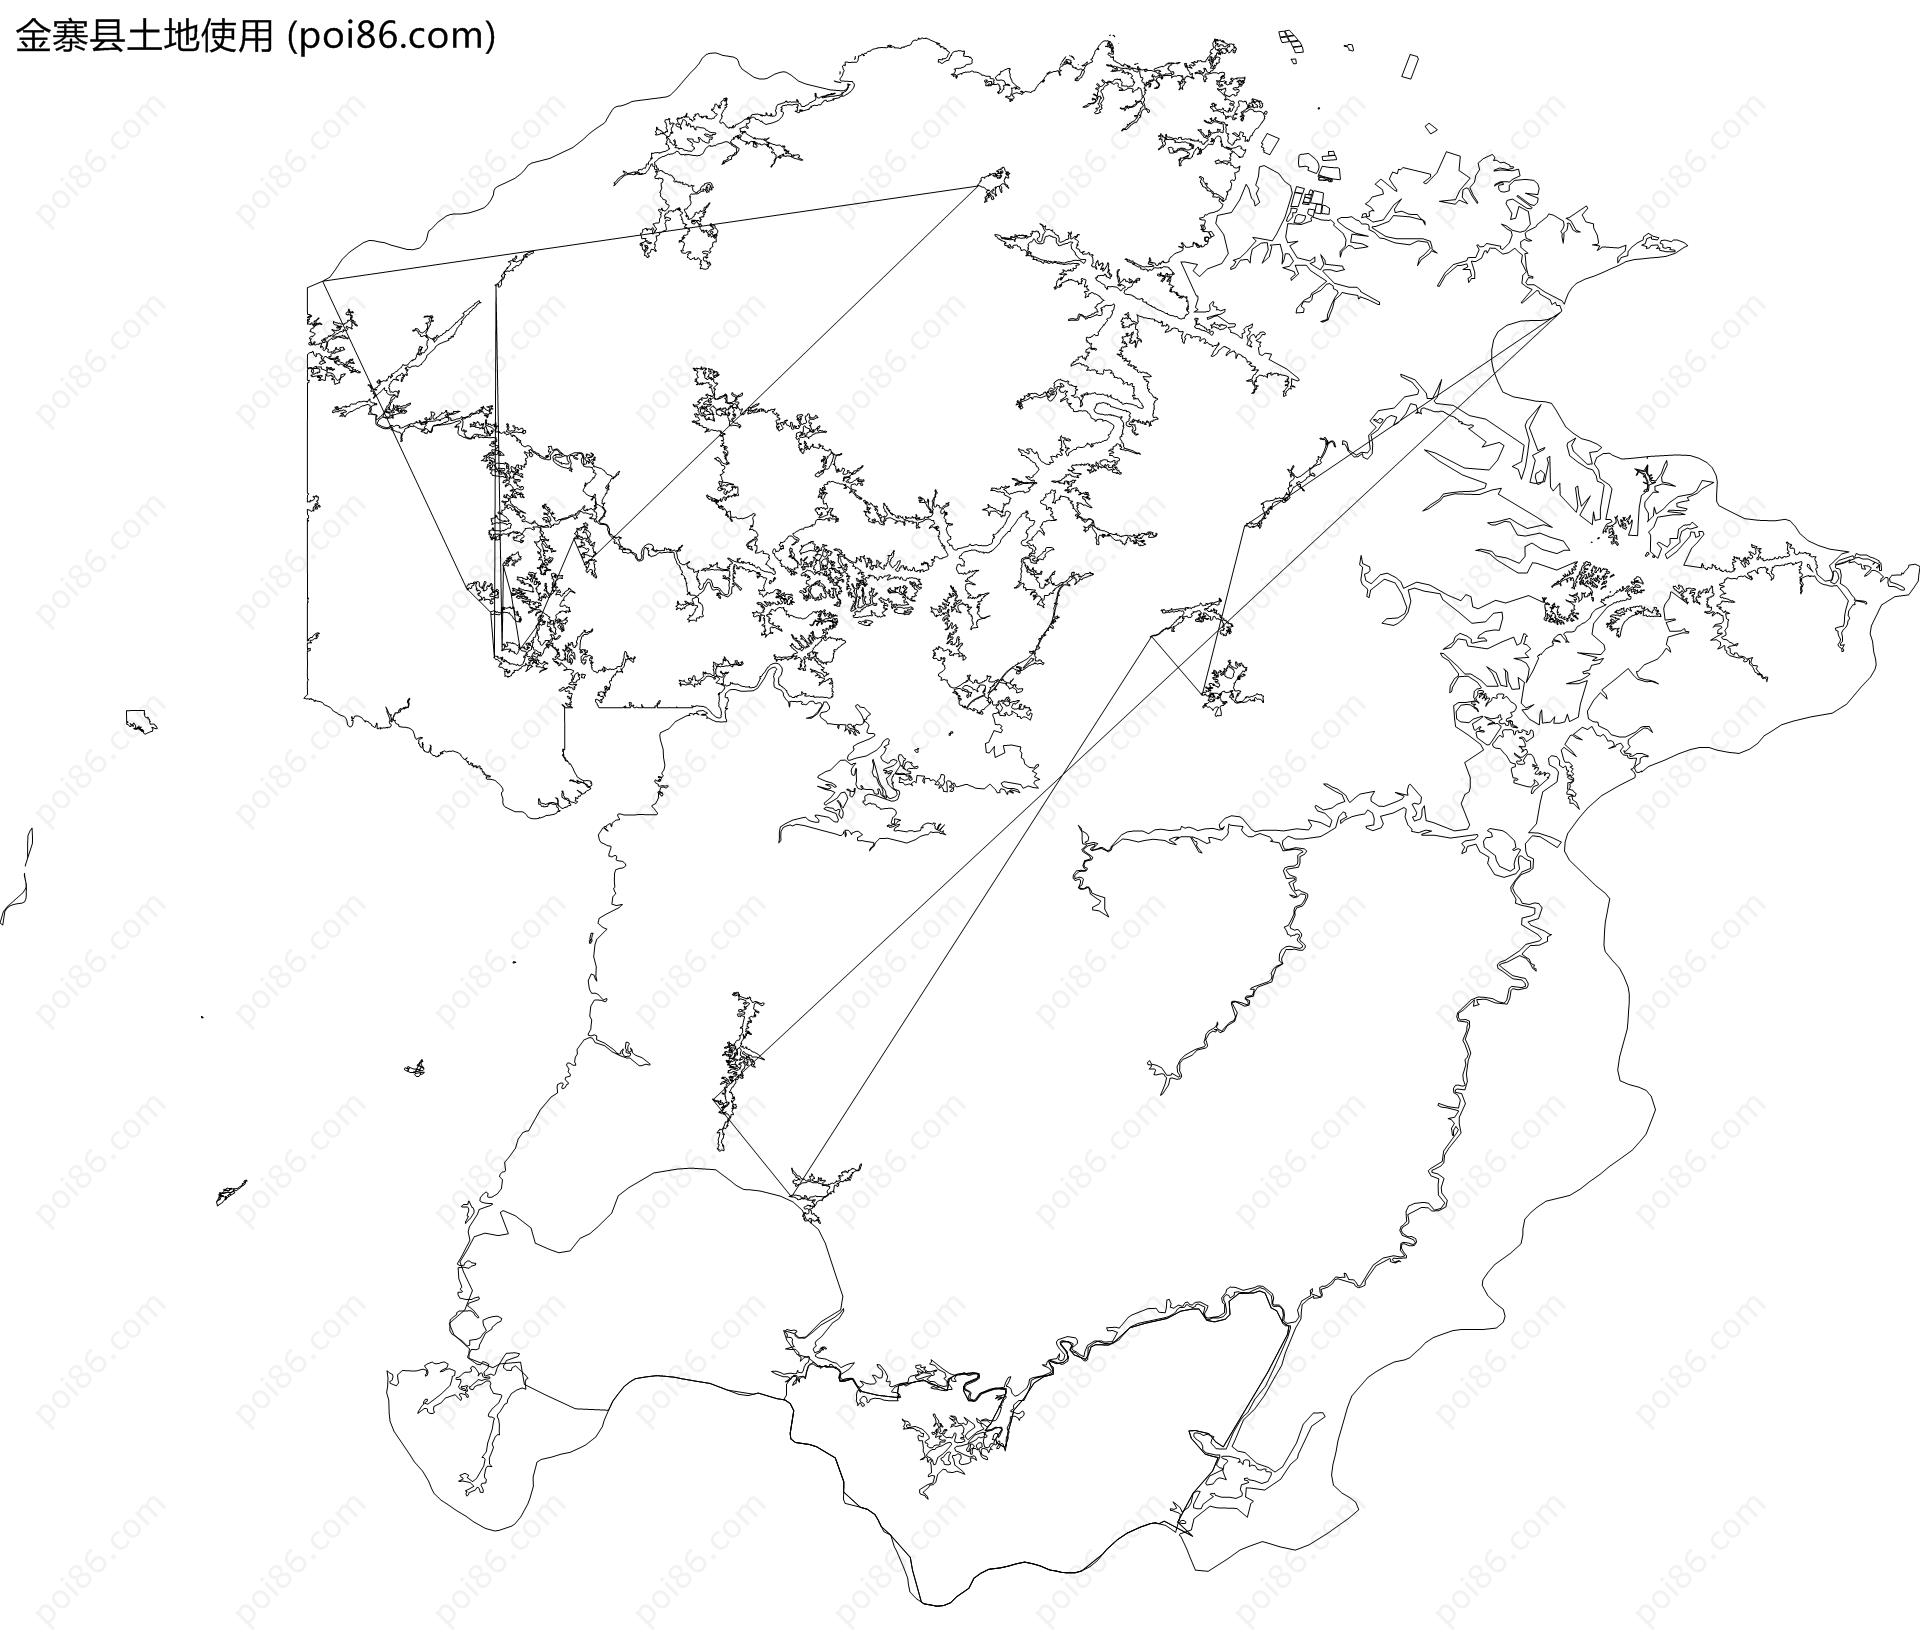 金寨县土地使用地图